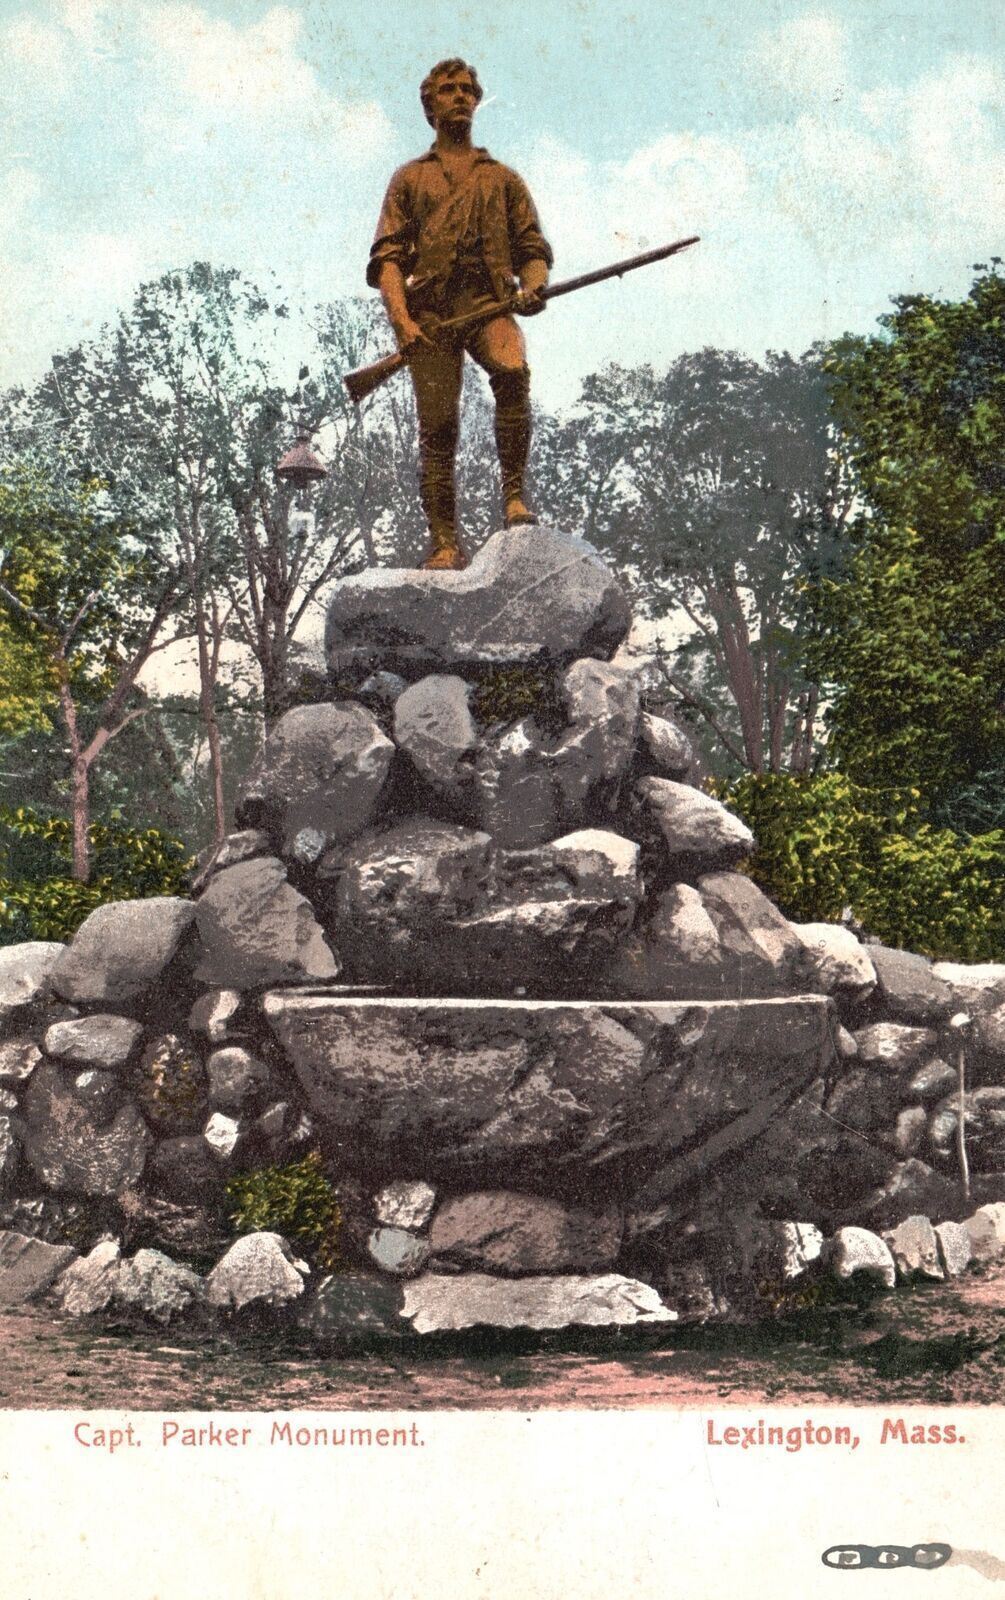 Vintage Postcard 1908 Capt. John Parker Monument Statue Lexington Massachusetts